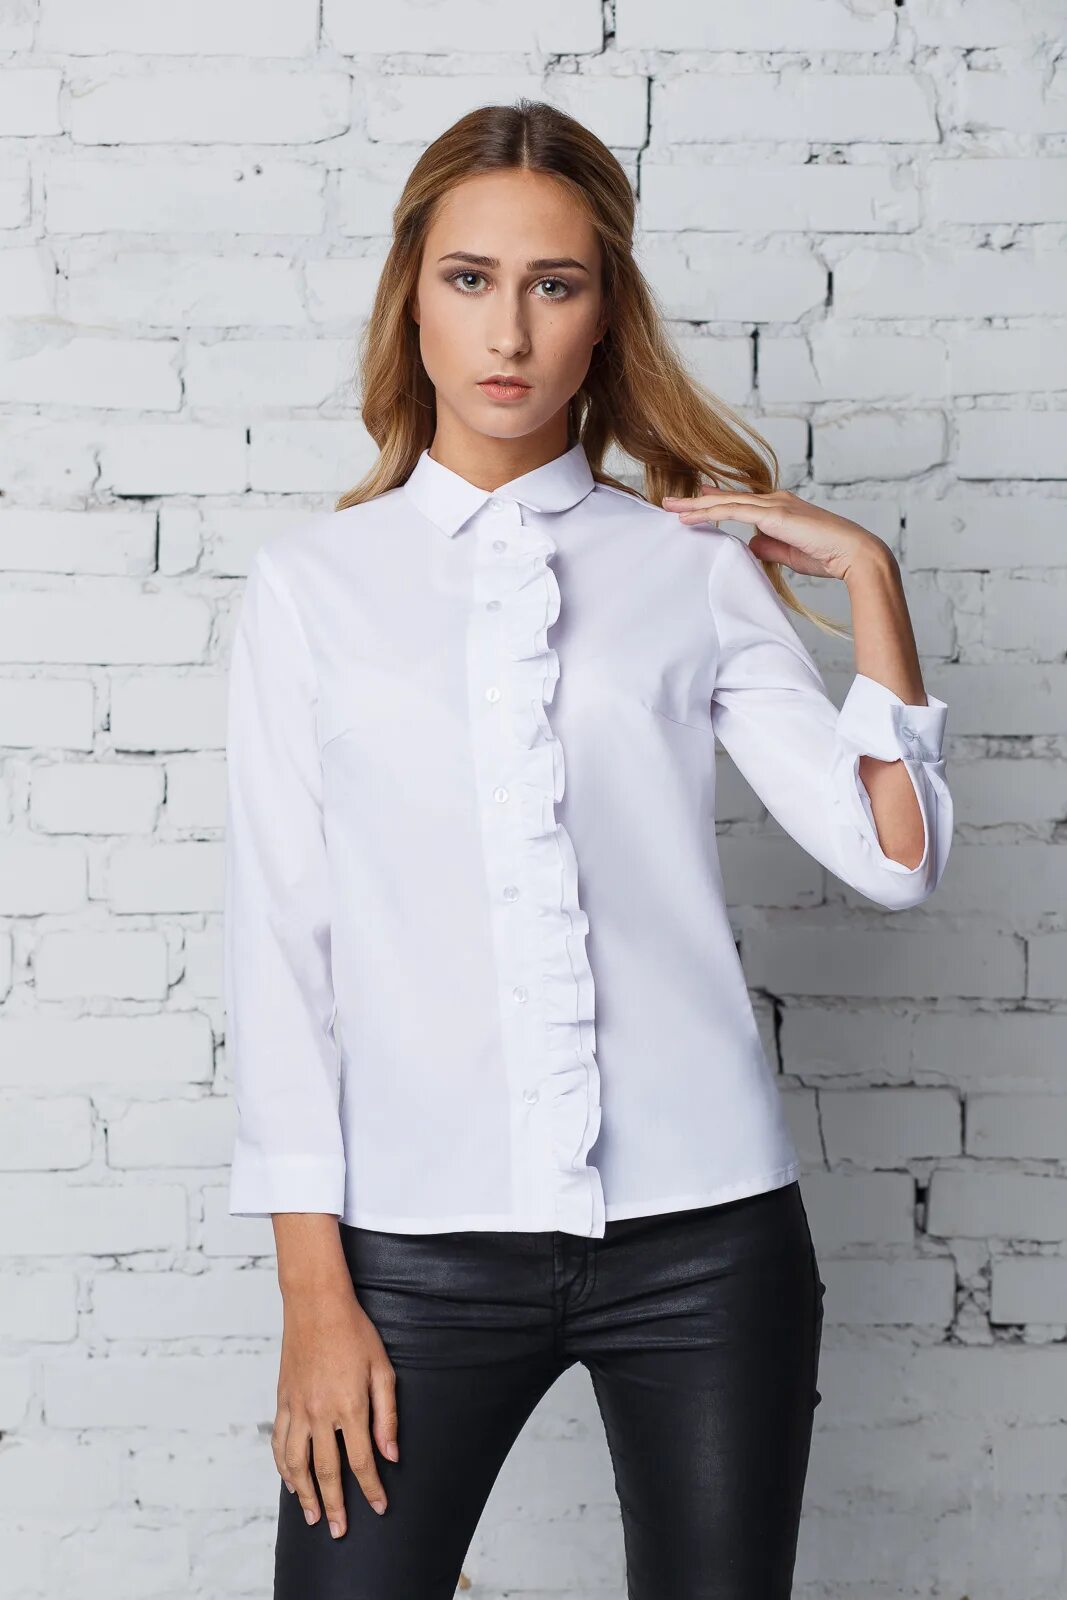 Где можно купить блузки. Белая блузка. Белая рубашка женская. Белая блузка женская. Интересные рубашки женские.